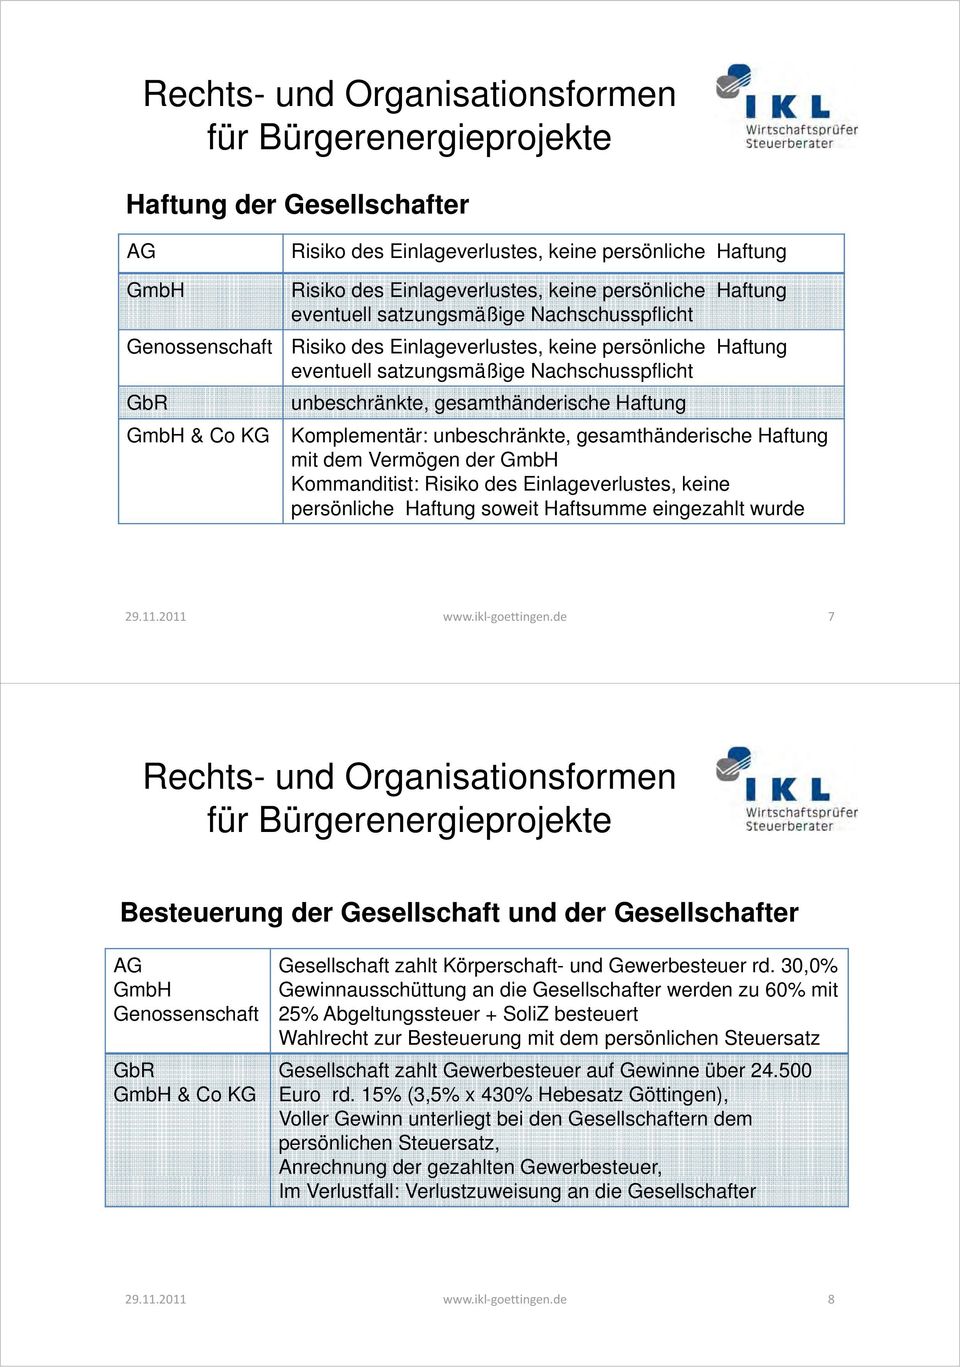 unbeschränkte, gesamthänderische Haftung mit dem Vermögen der GmbH Kommanditist: Risiko des Einlageverlustes, keine persönliche Haftung soweit Haftsumme eingezahlt wurde 29.11.2011 www.ikl goettingen.